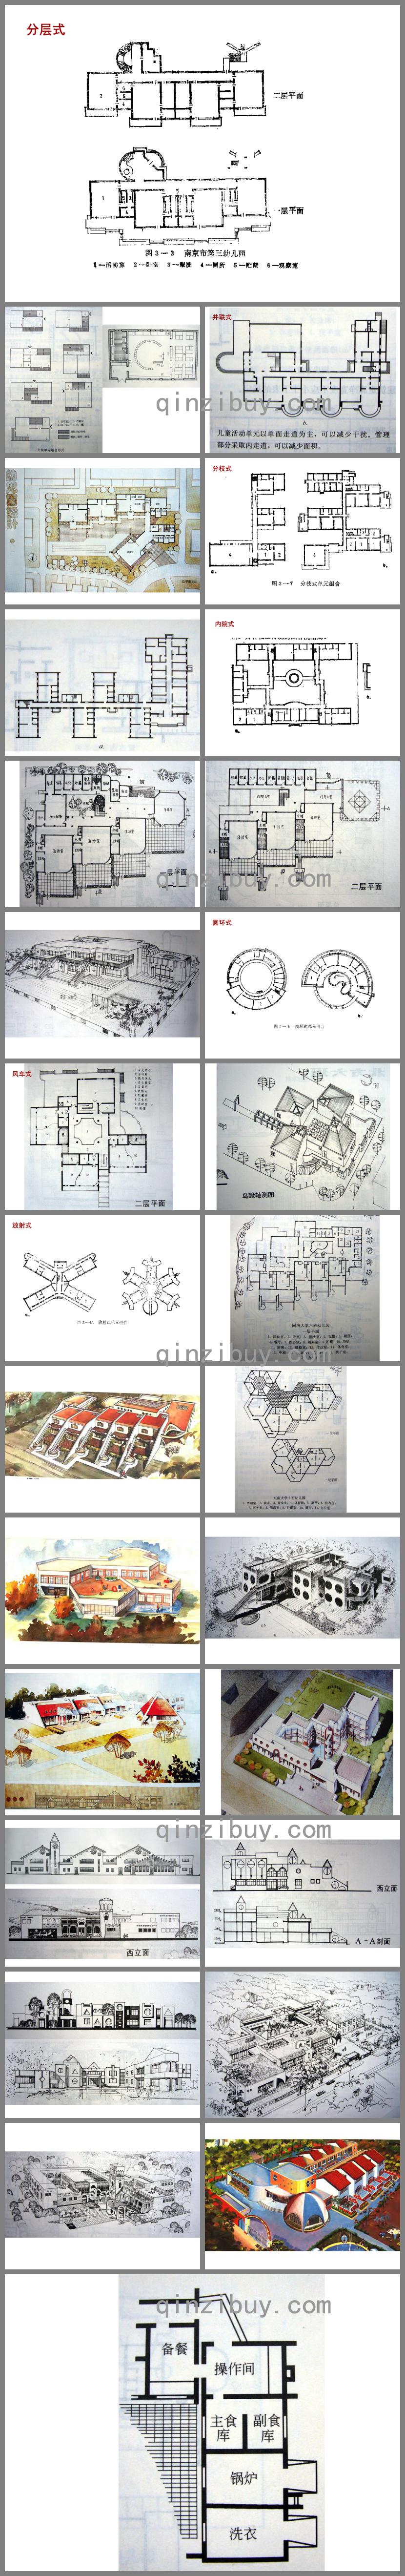 托儿所幼儿园建筑设计图PPT课件